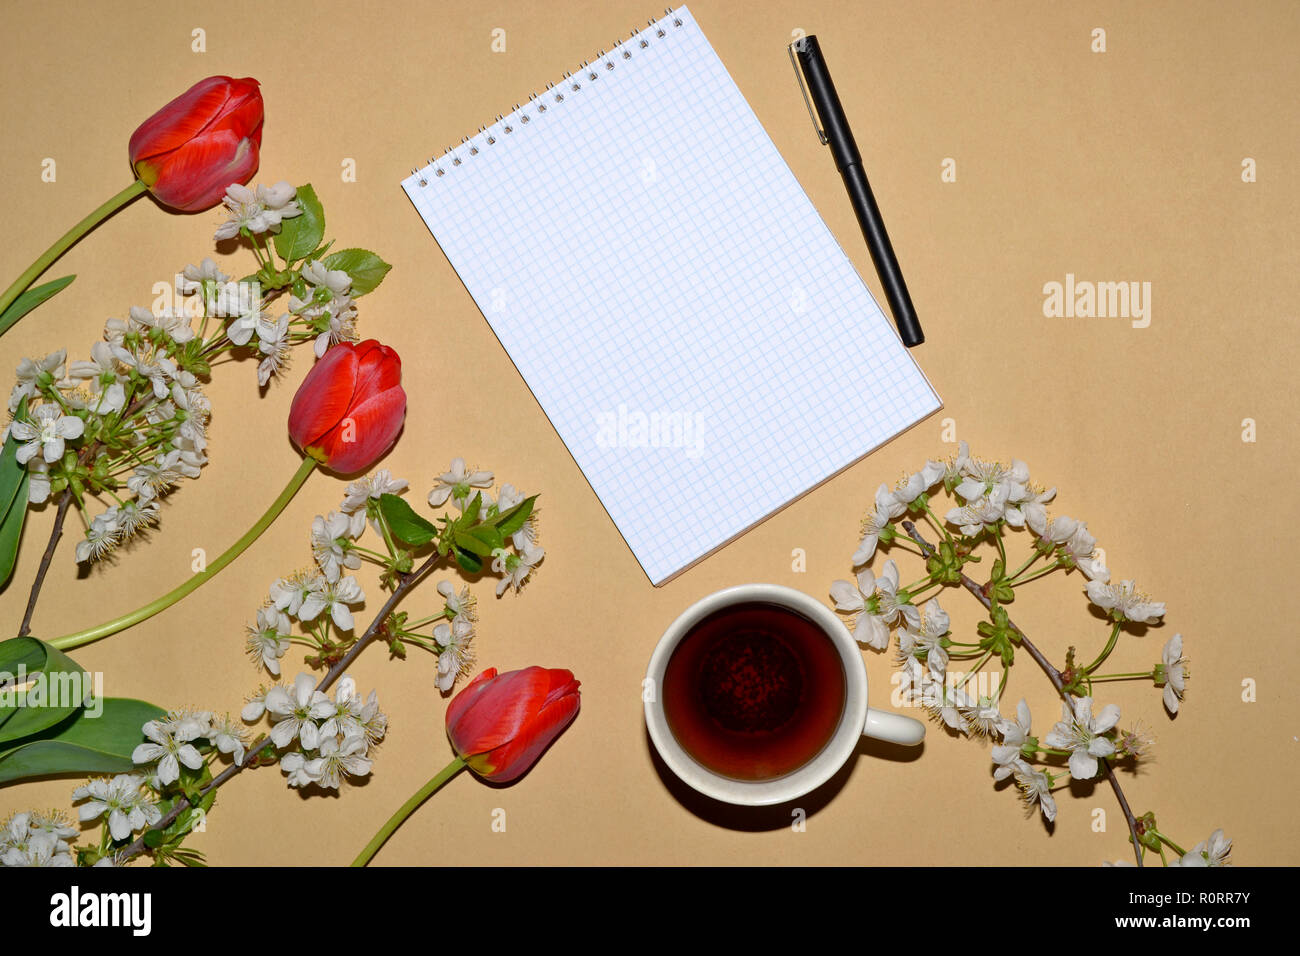 Öffnen Sie den Editor für das Schreiben mit Tulpen und weißen Blumen eingerahmt, und eine Tasse Kaffee. Stockfoto